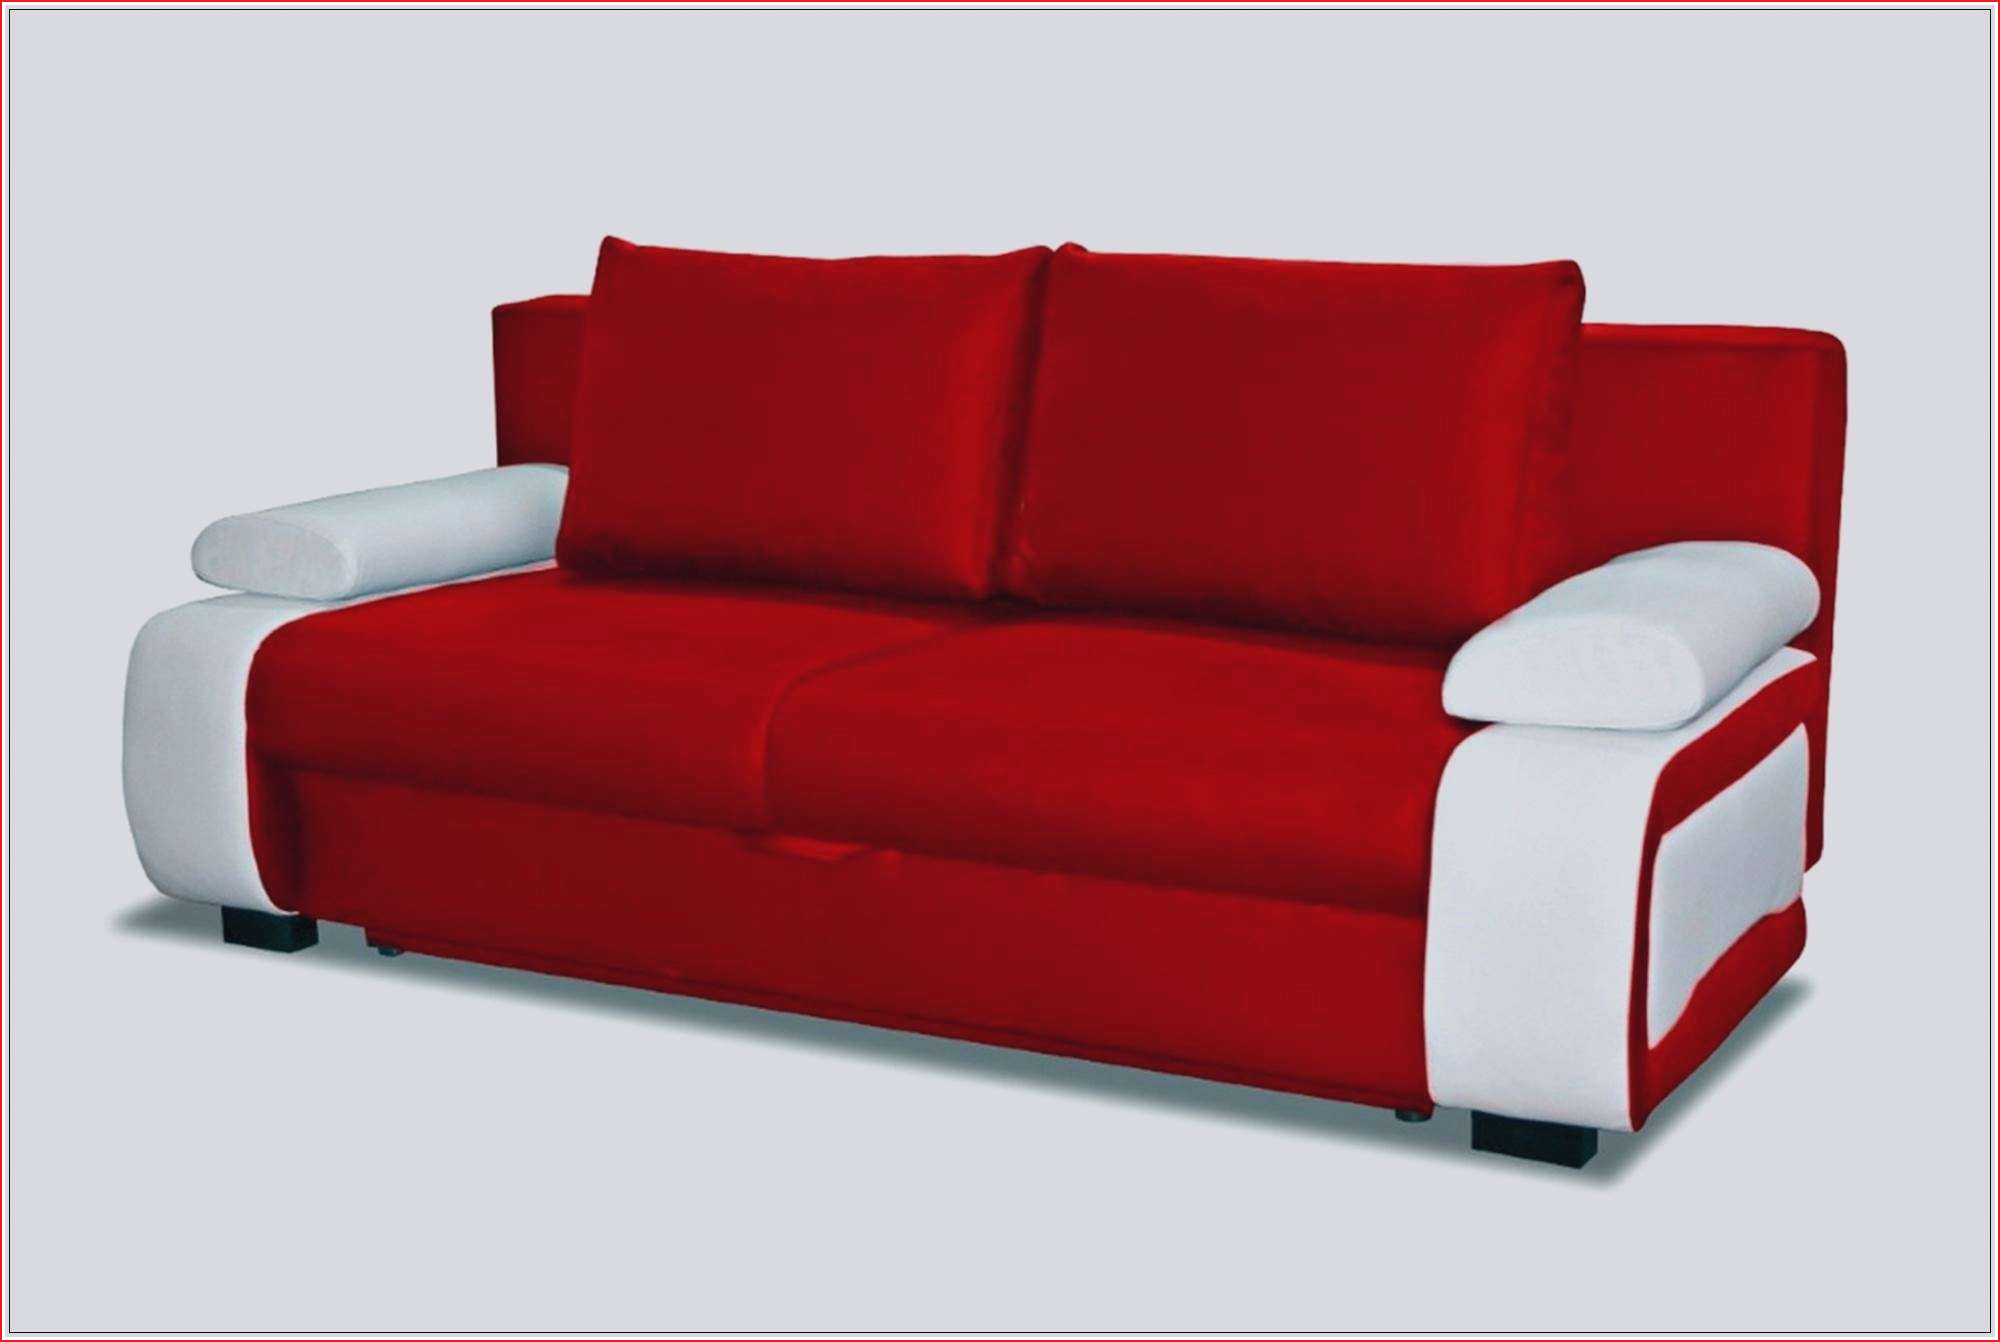 fauteuil futon matelas bz but unique matelas banquette bz meilleur canape futon 0d of fauteuil futon